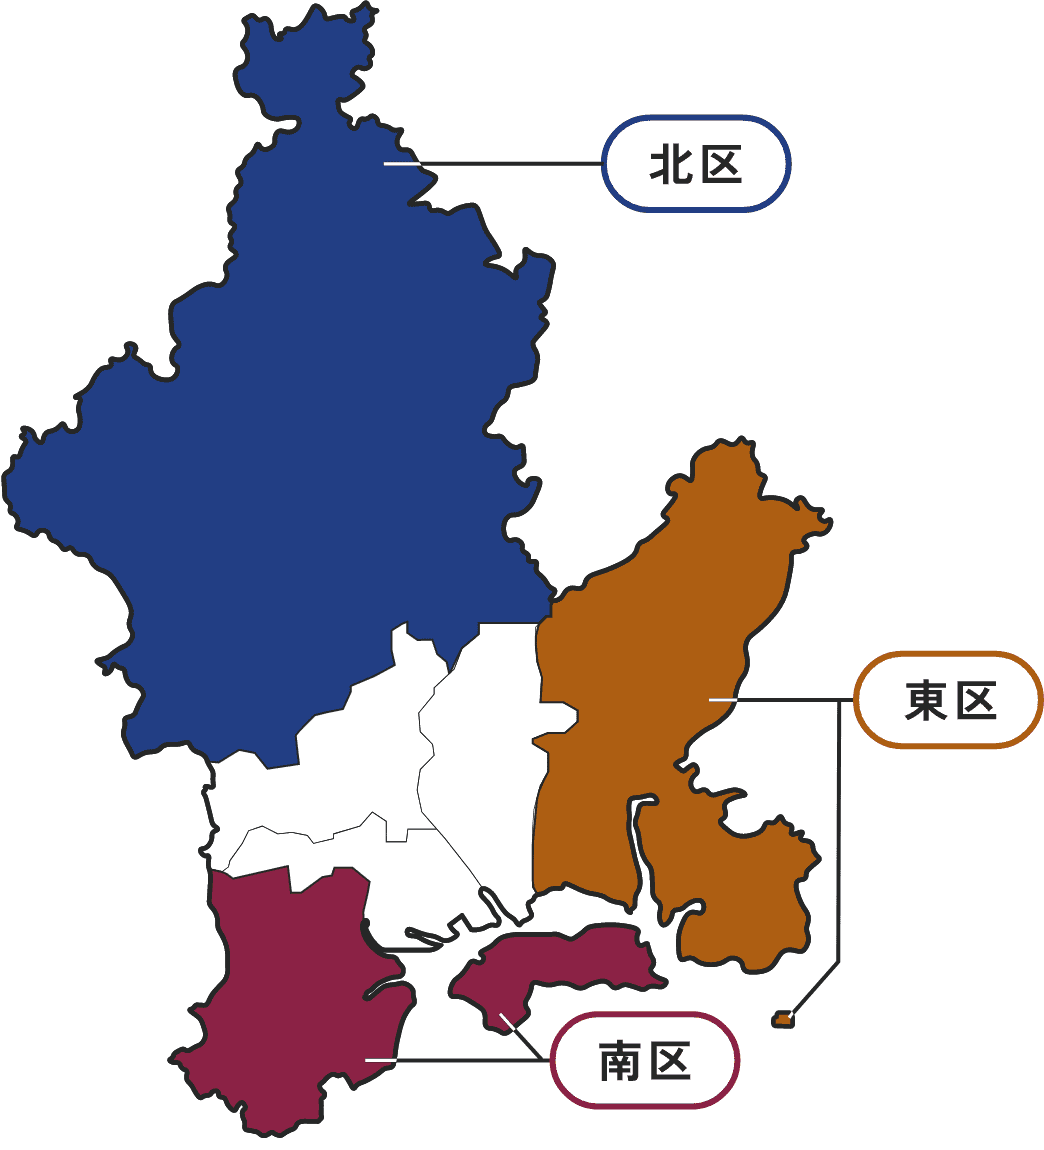 岡山市の地図に北区、東区、南区が色で分かれている